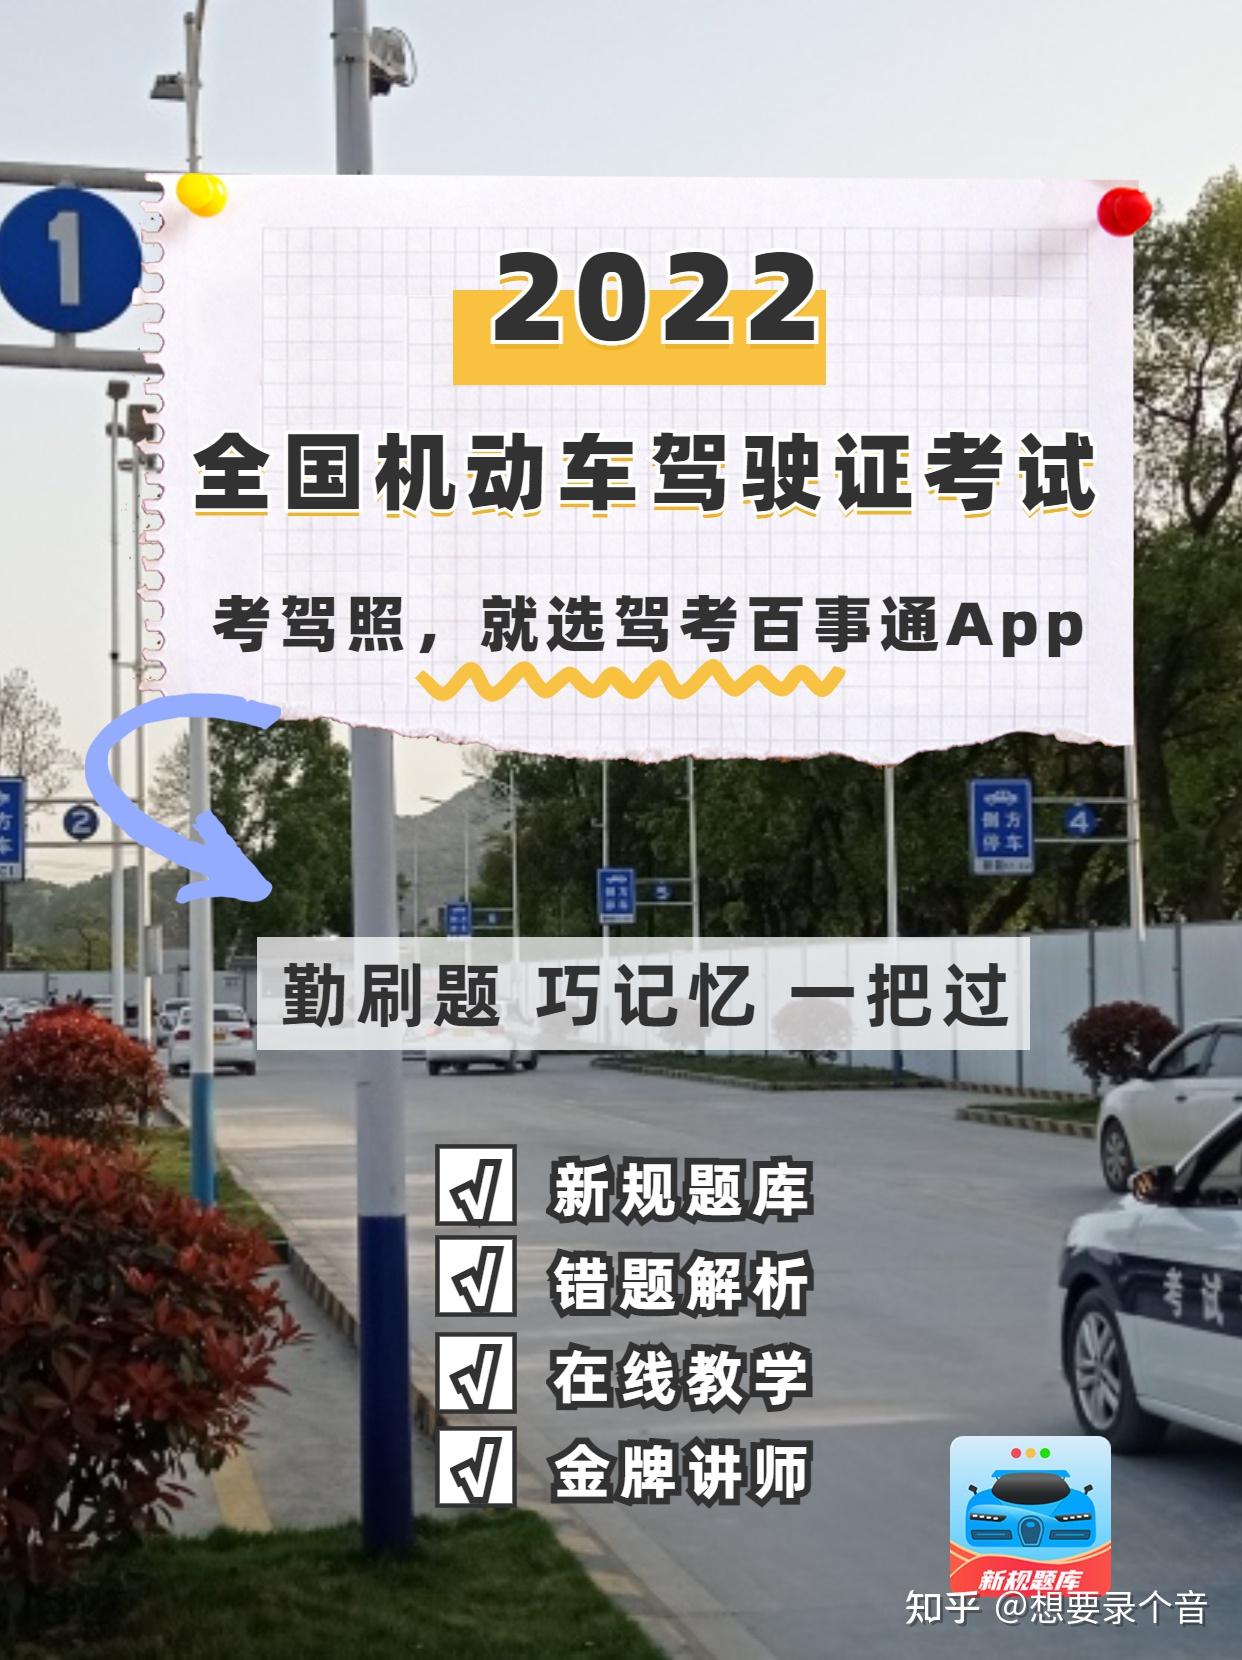 北京驾校2022年1月学车多少钱 - 知乎